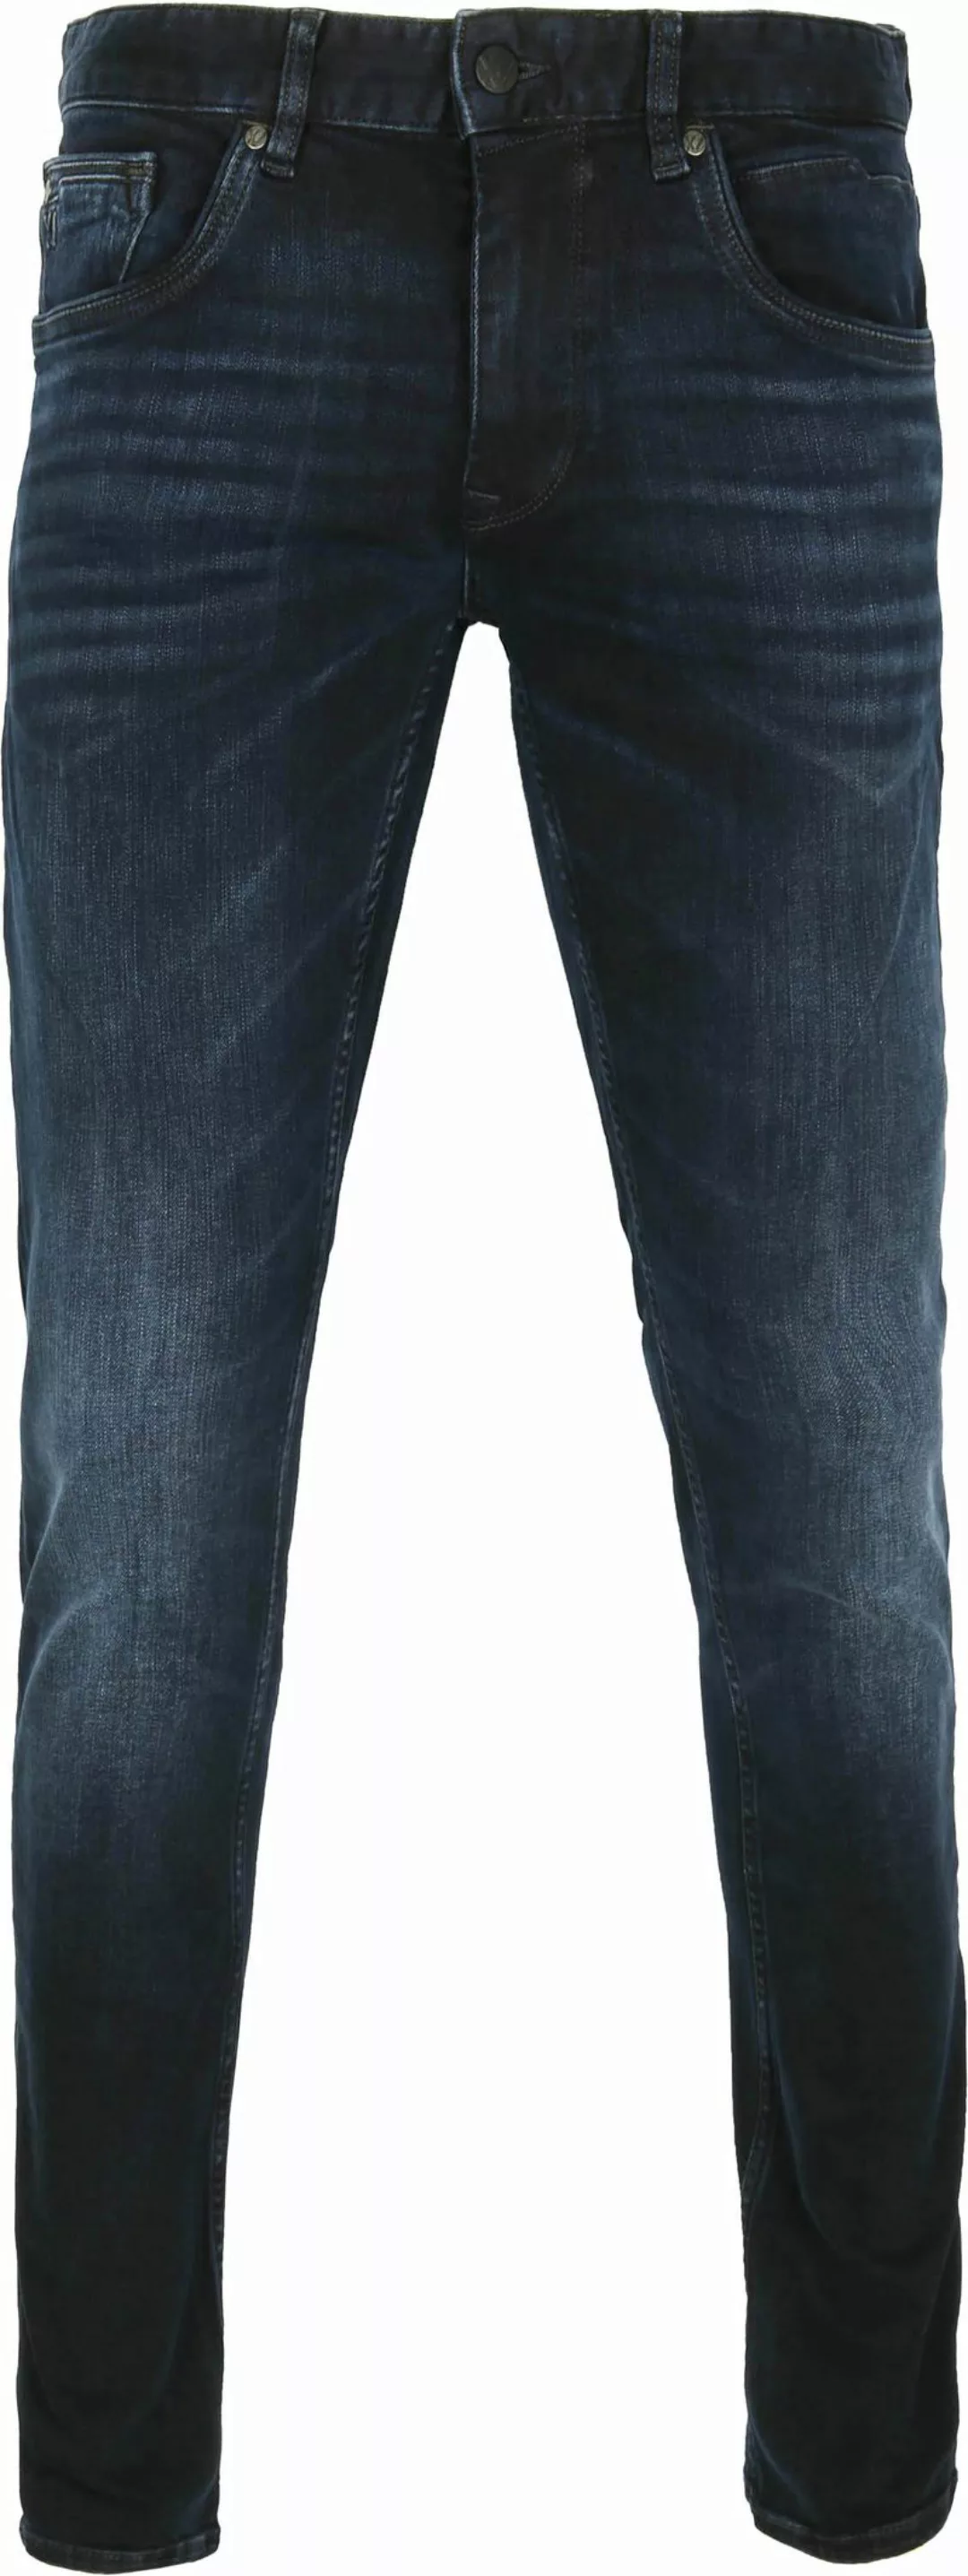 PME Legend XV Jeans Blue Black PTR150 - Größe W 32 - L 38 günstig online kaufen